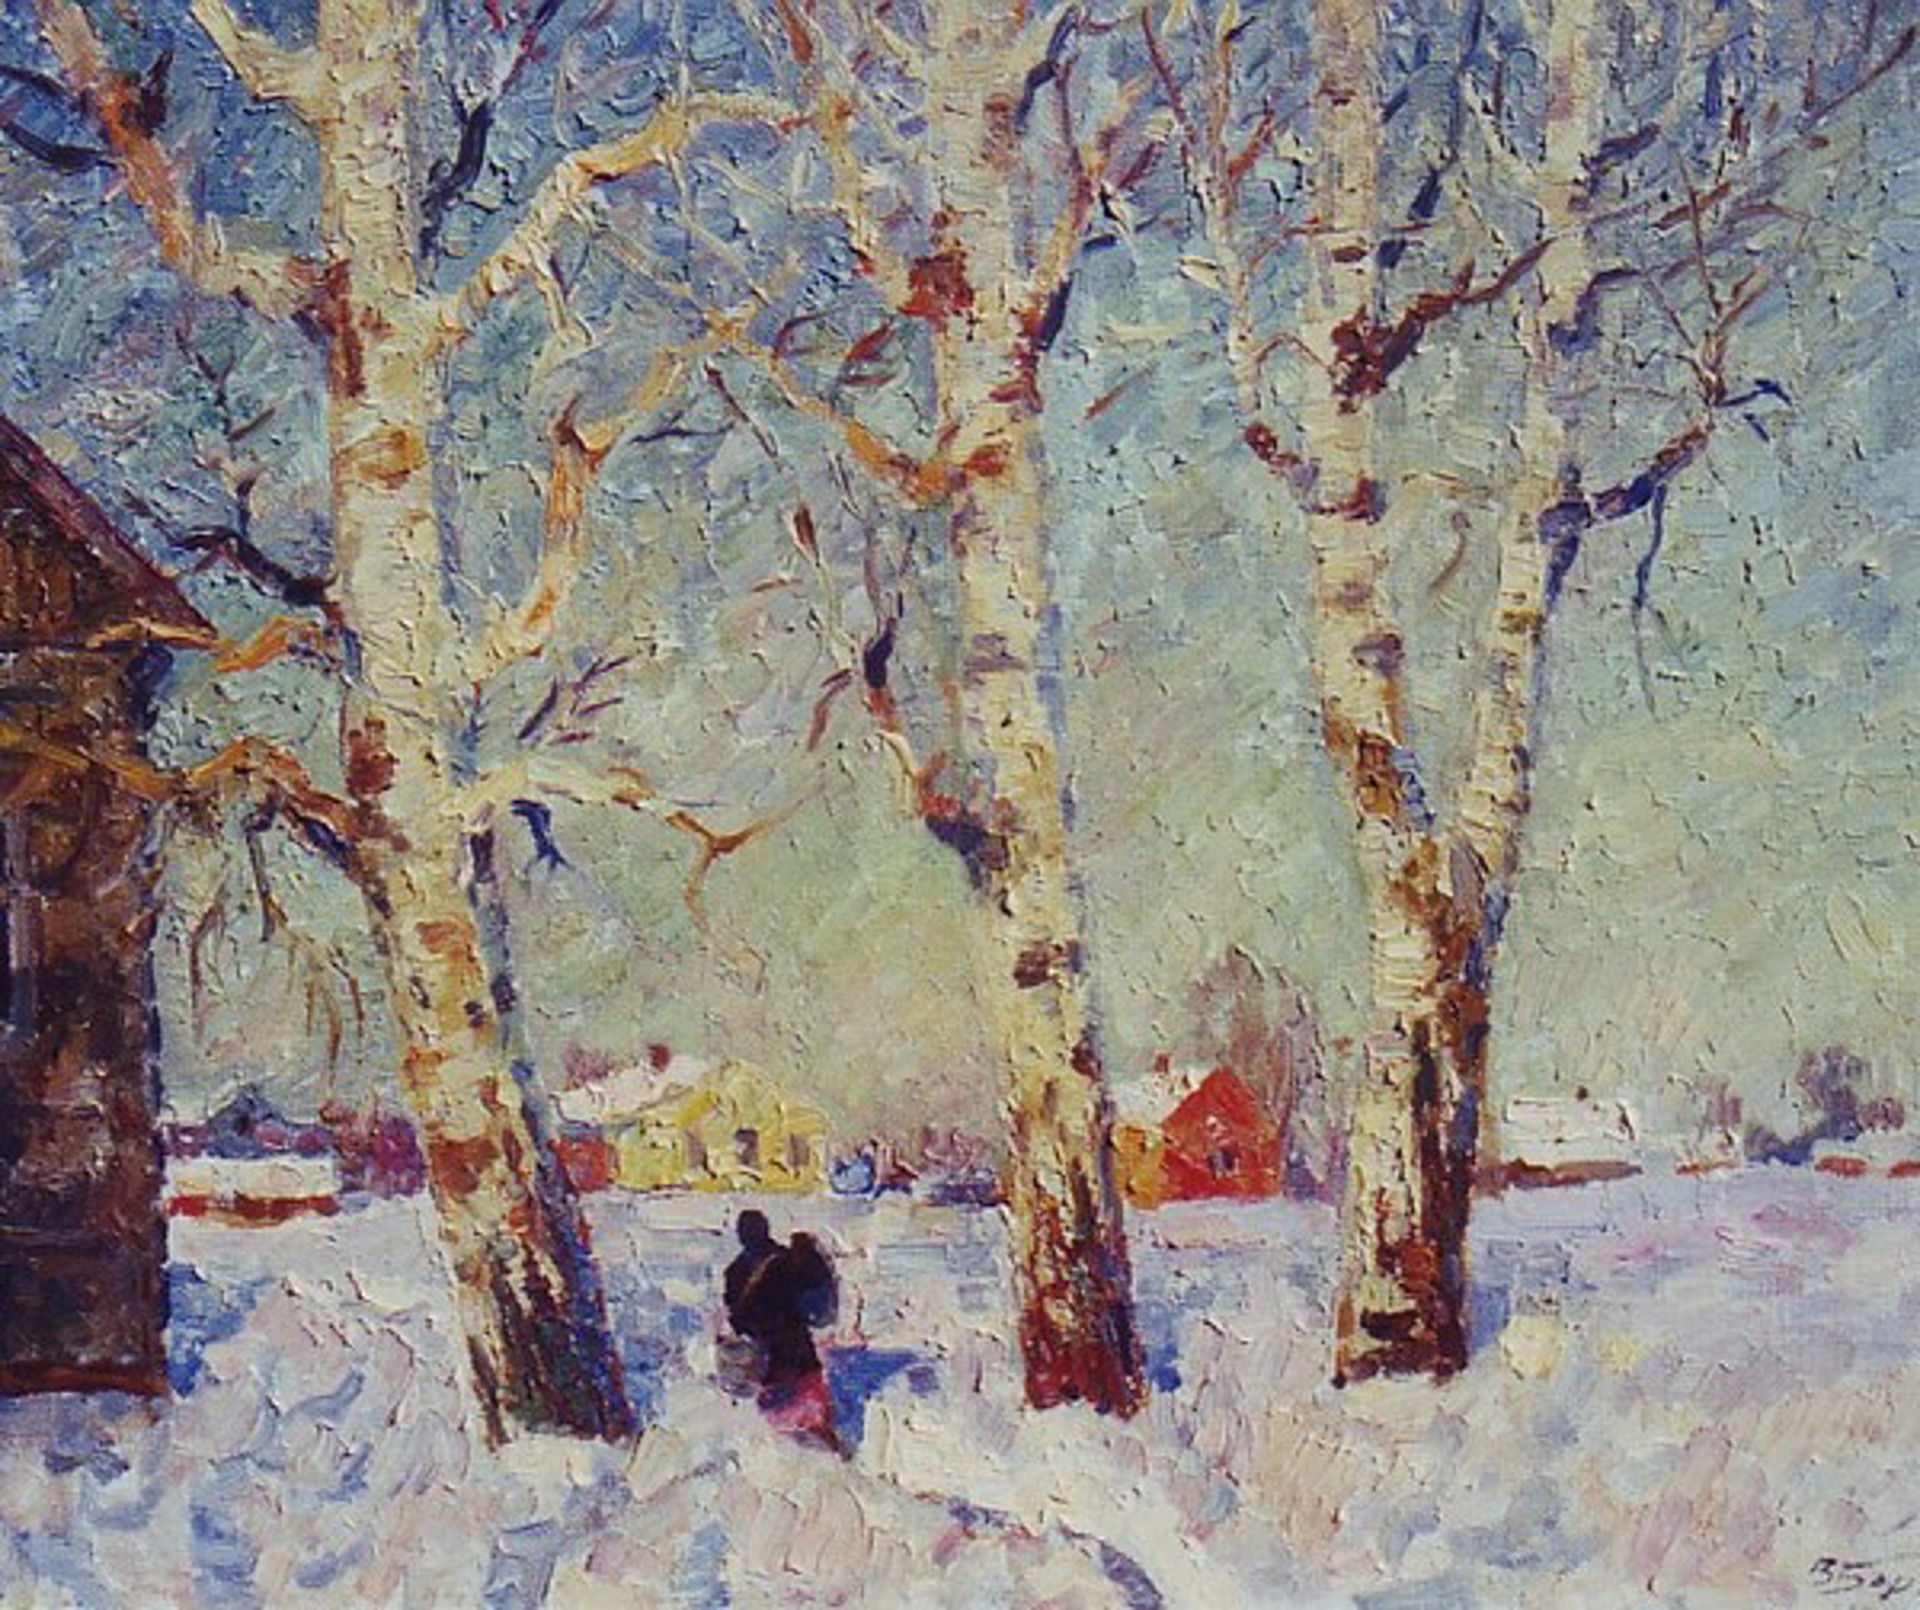 Winter by Veniamin Borisov